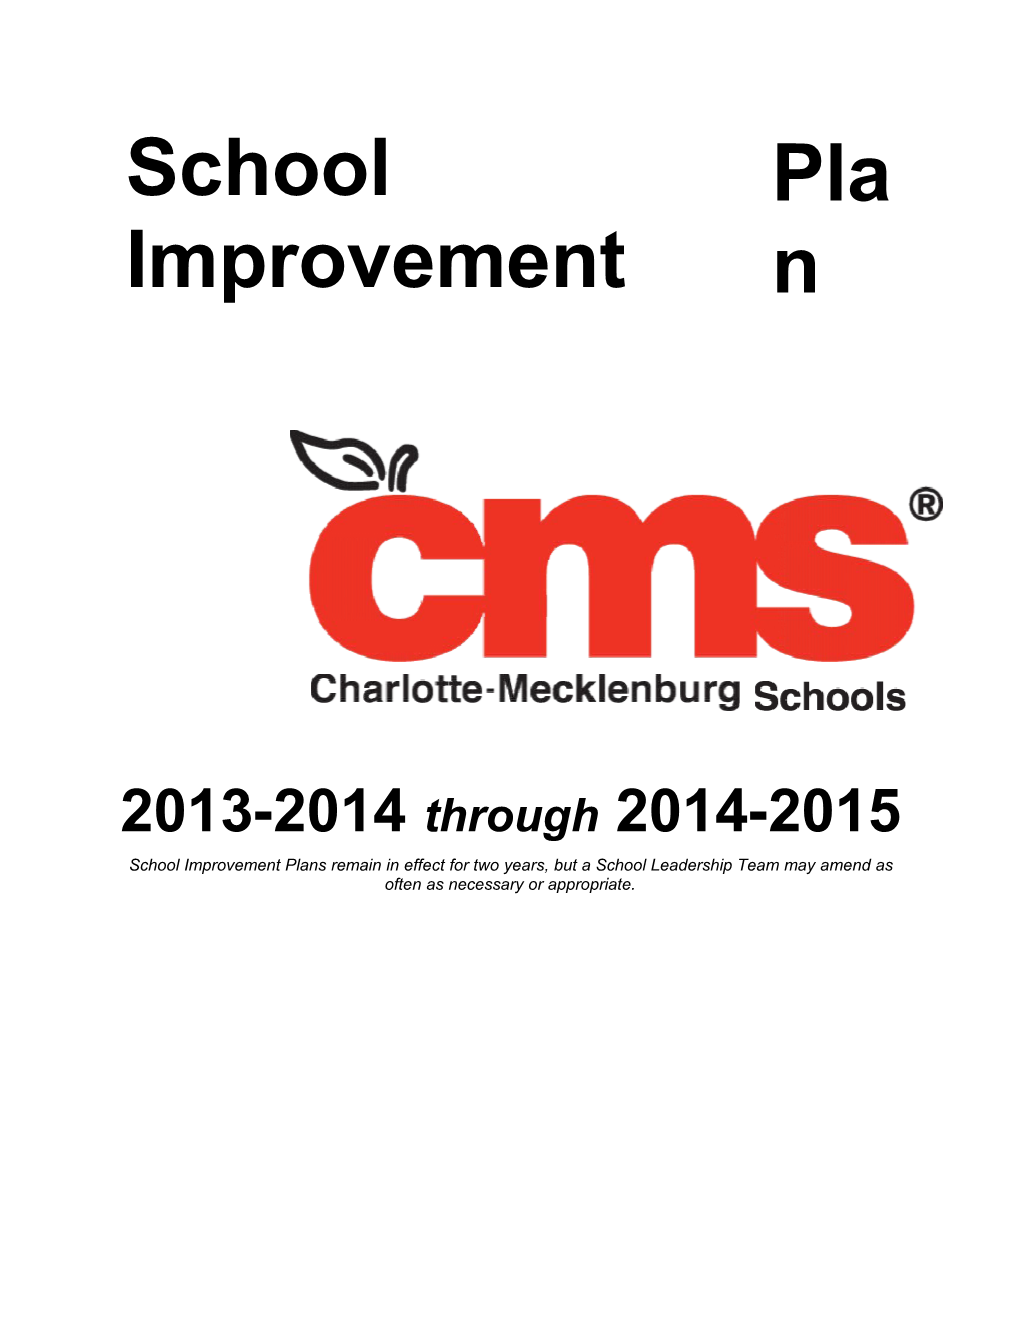 WCHS School Improvement Plan 2013 2014 Through 2014 2015